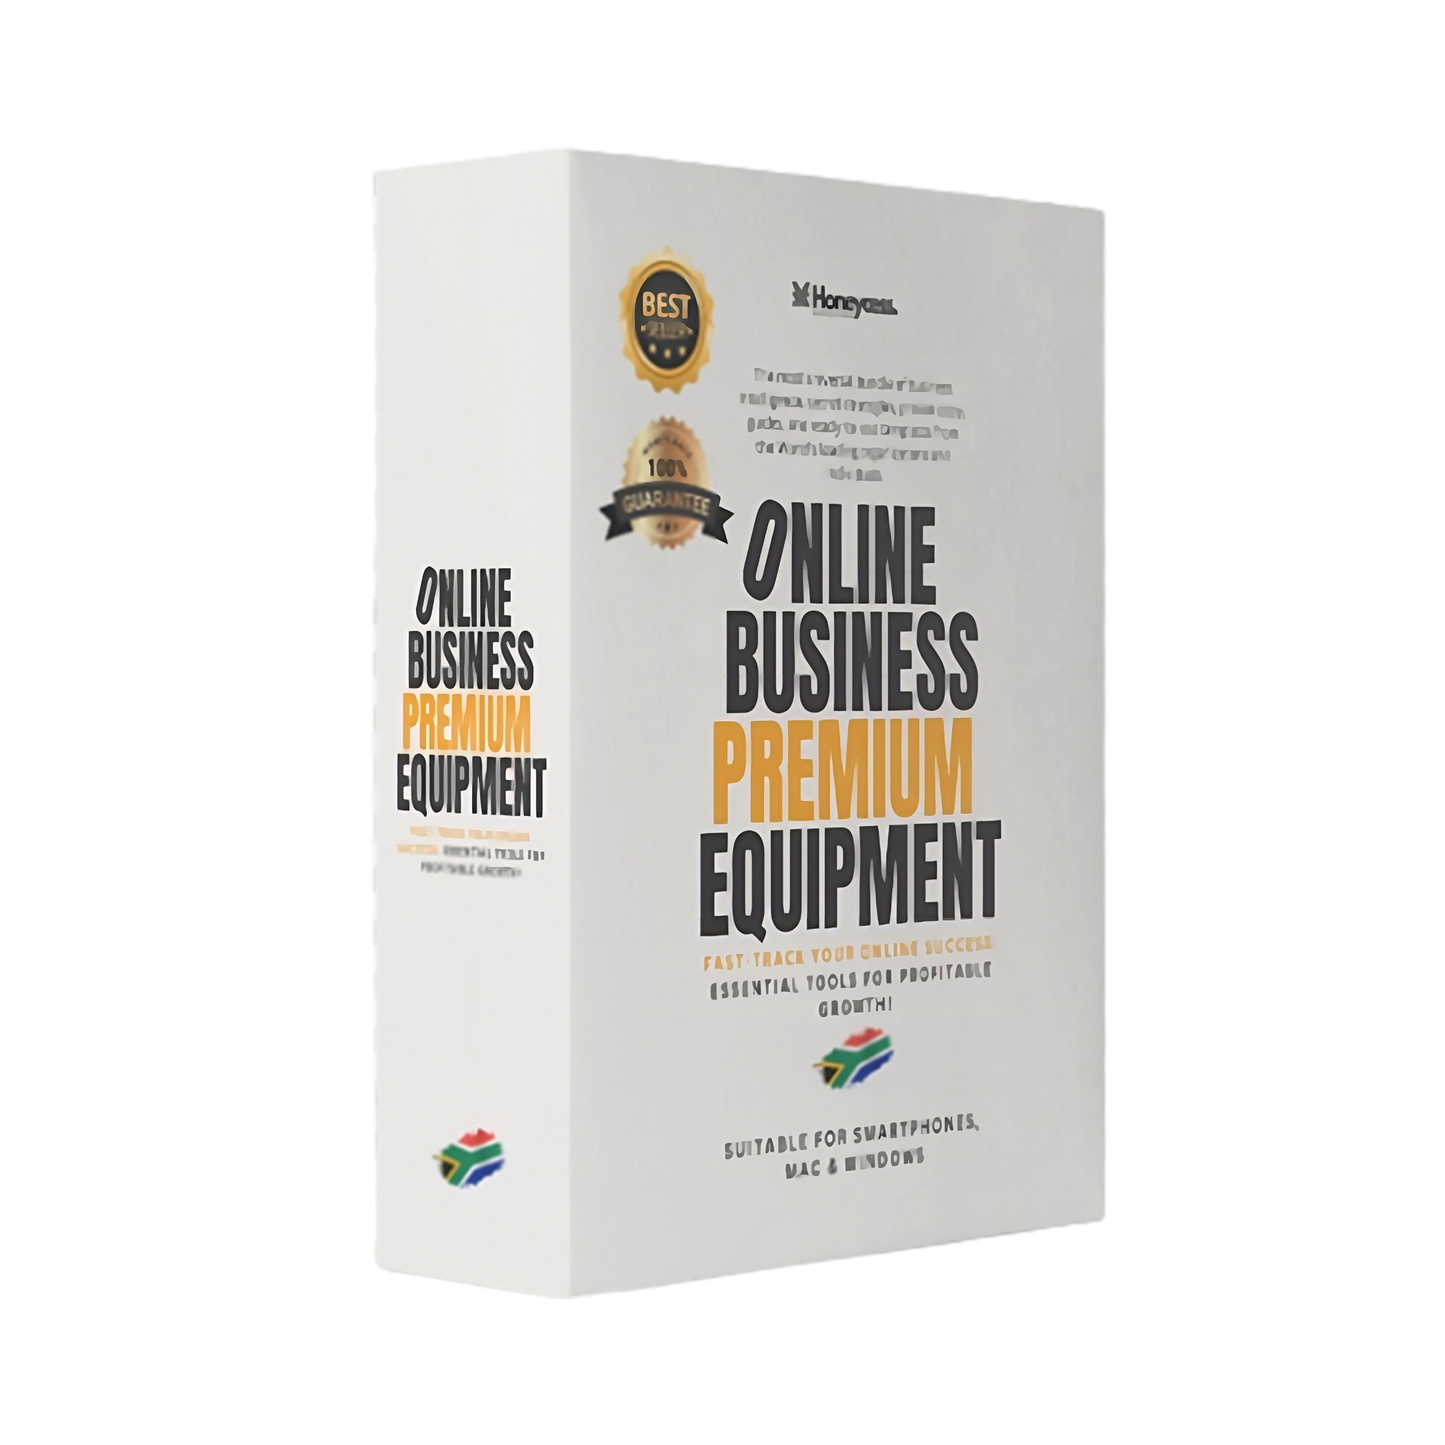 Online Business Premium Equipment